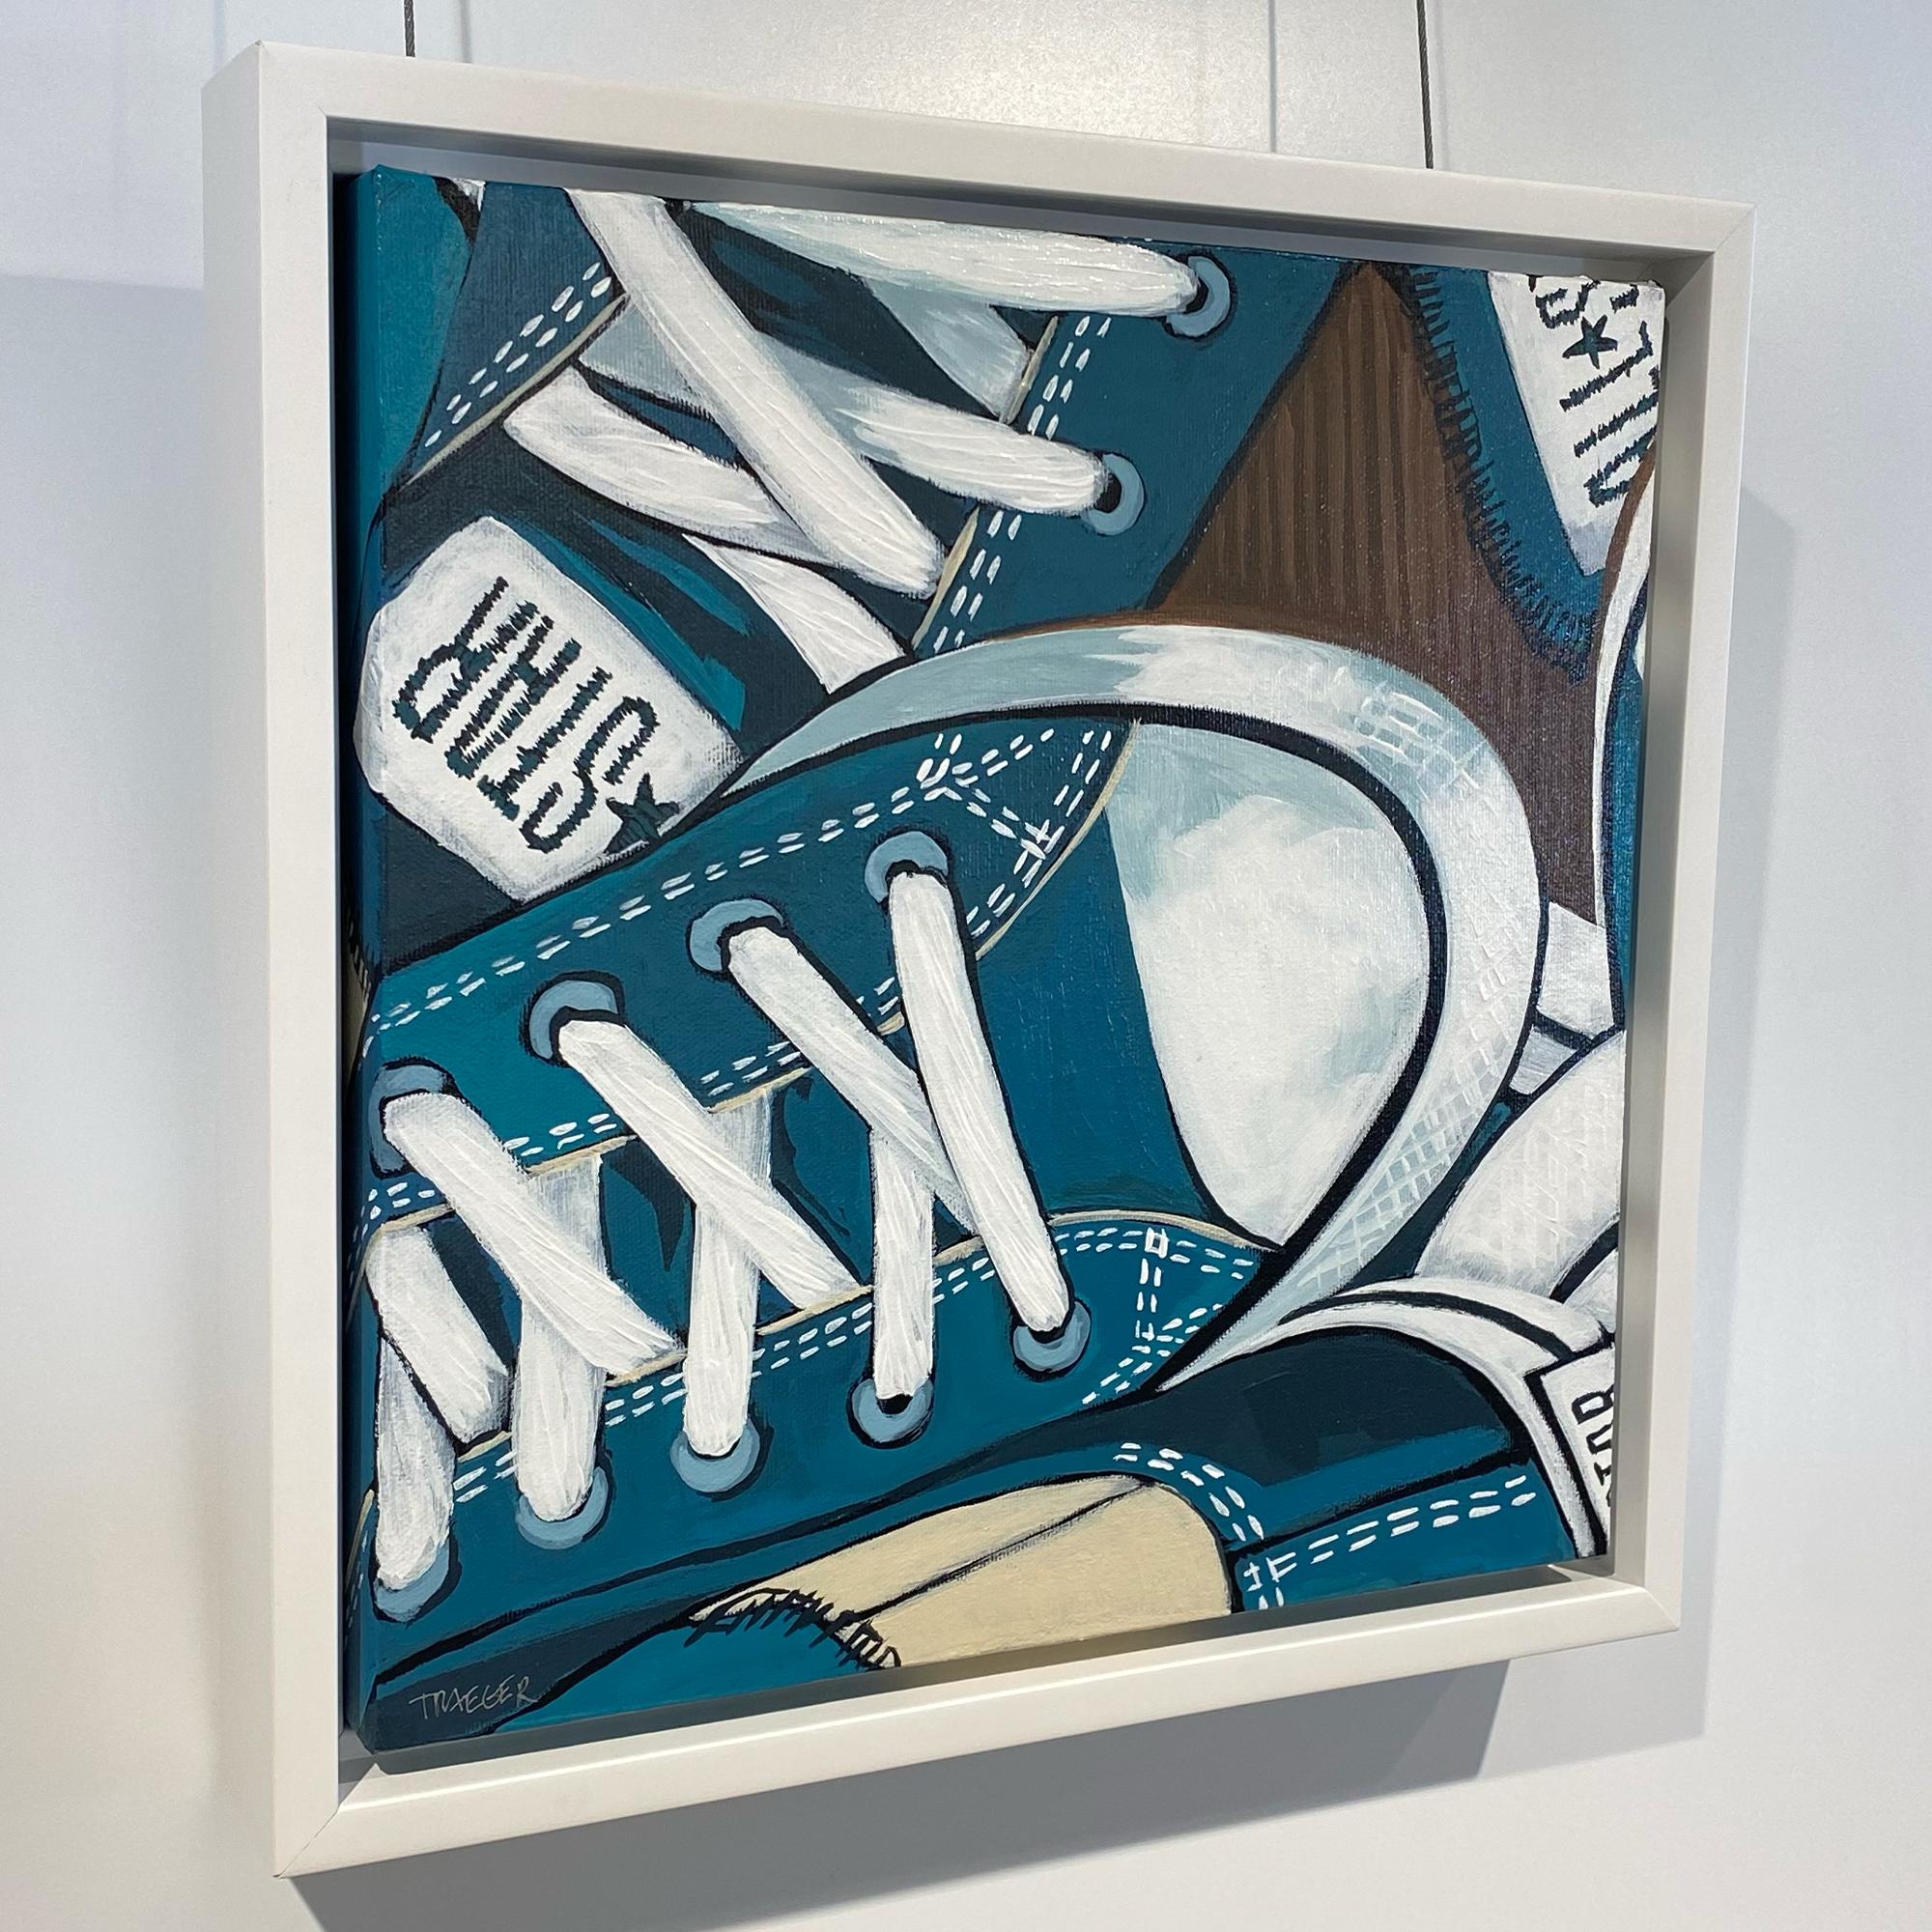 Dreiviertelviertel gedrechselt, blau-weiße, skurrile, konverse Schuhe mit Rundhalsausschnitt, Acryl auf Leinwand – Painting von Kathy Traeger